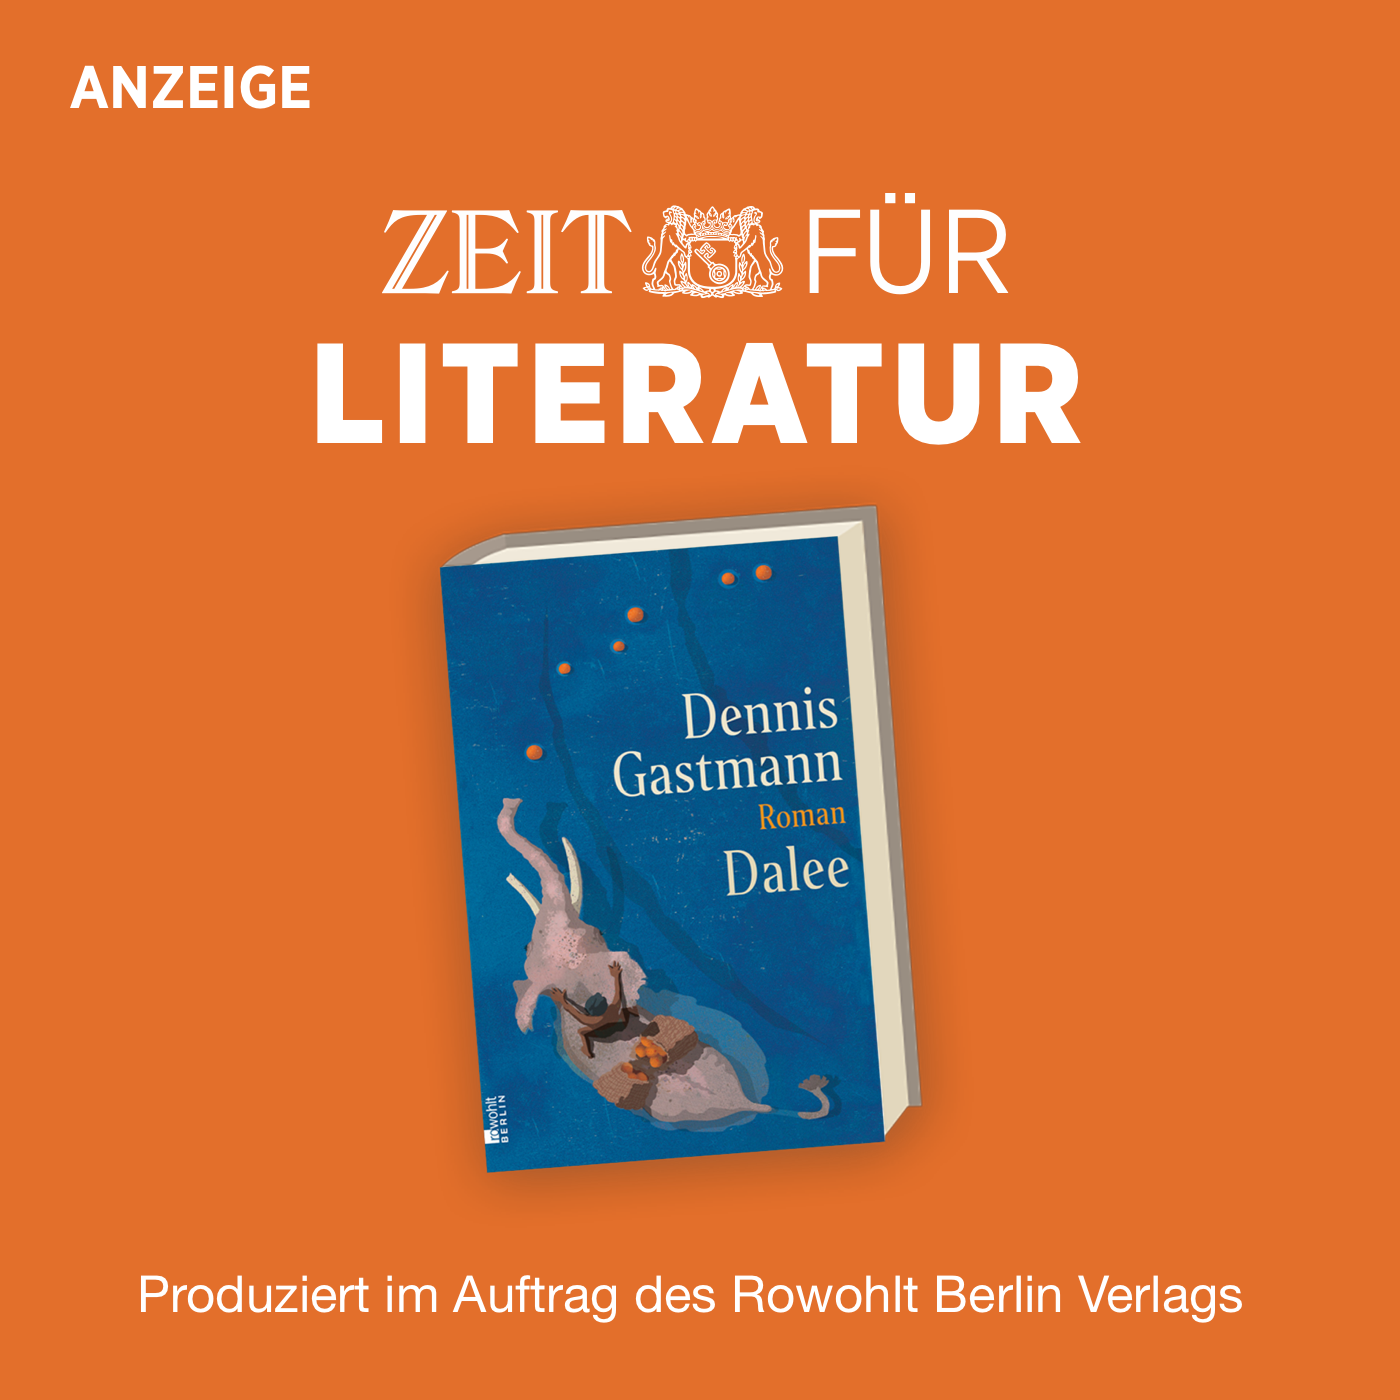 ZEIT für Literatur mit Dennis Gastmann